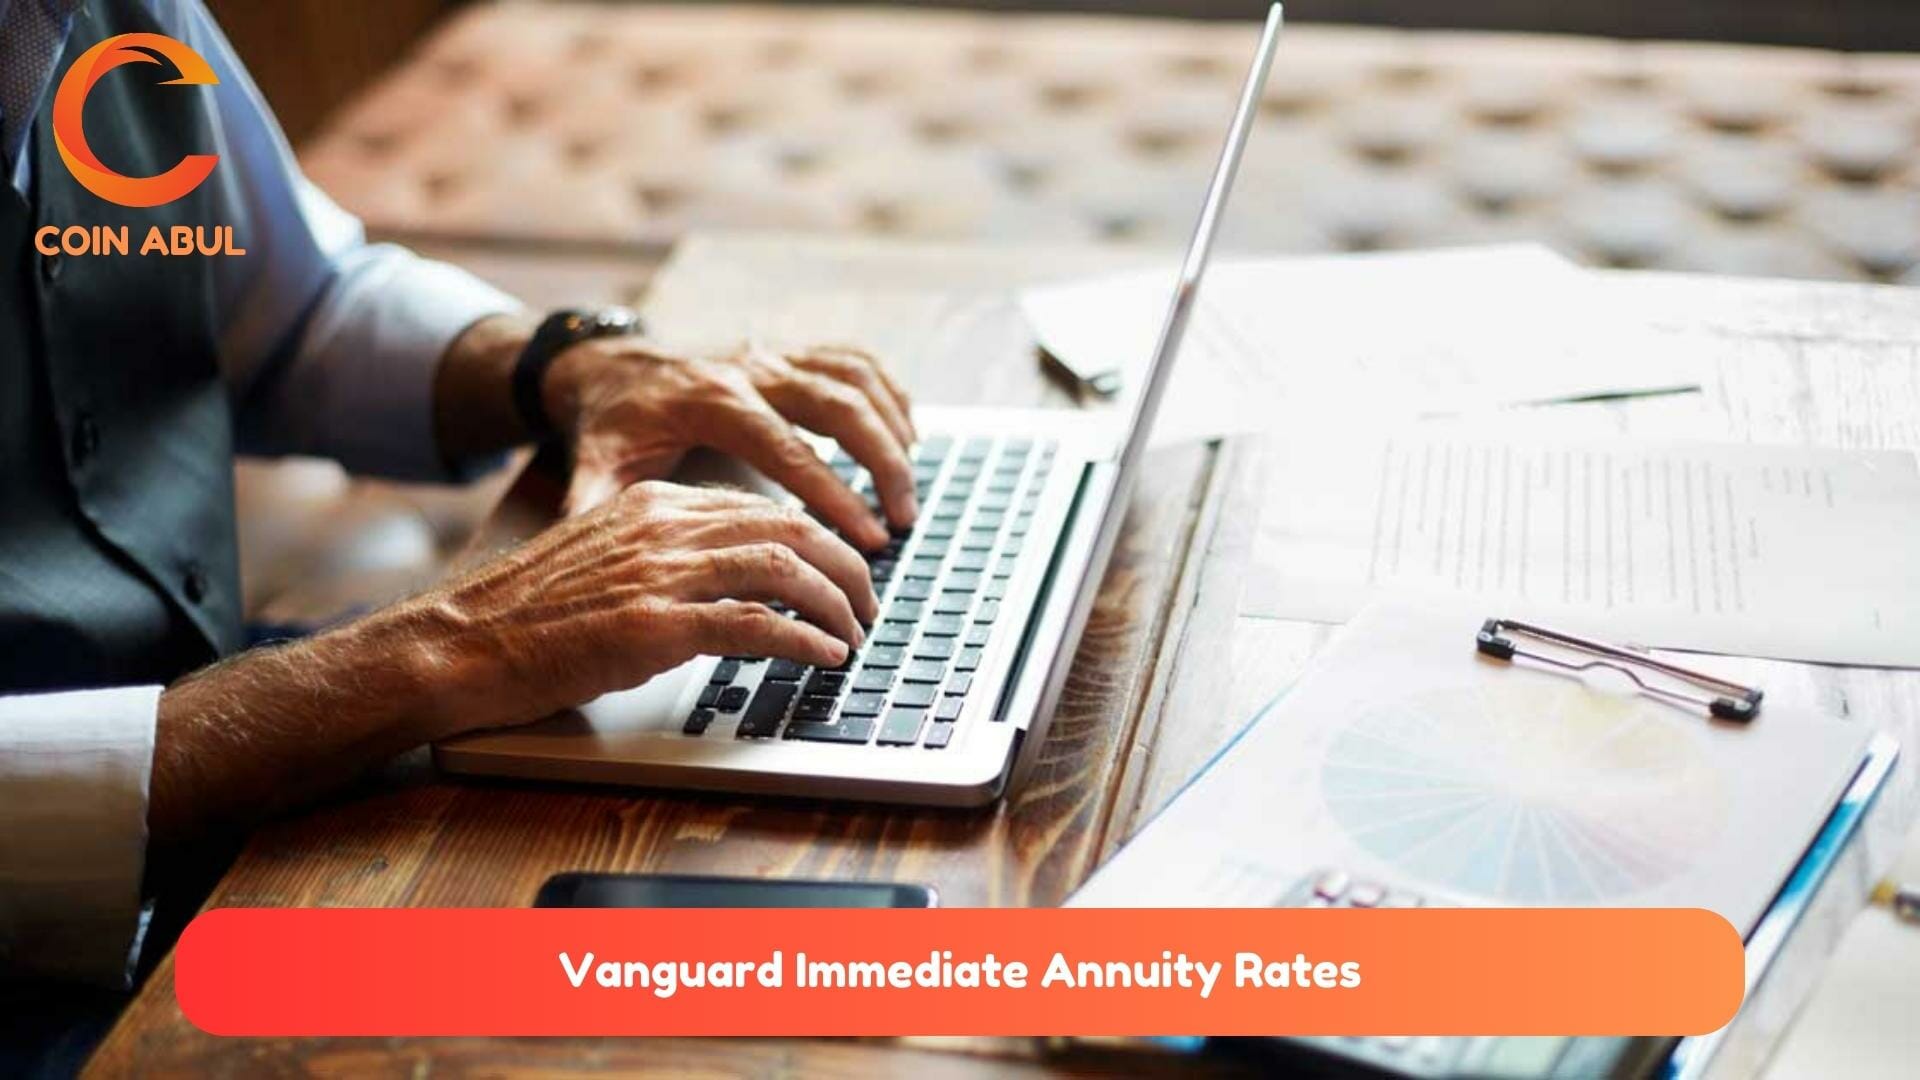 Vanguard Immediate Annuity Rates